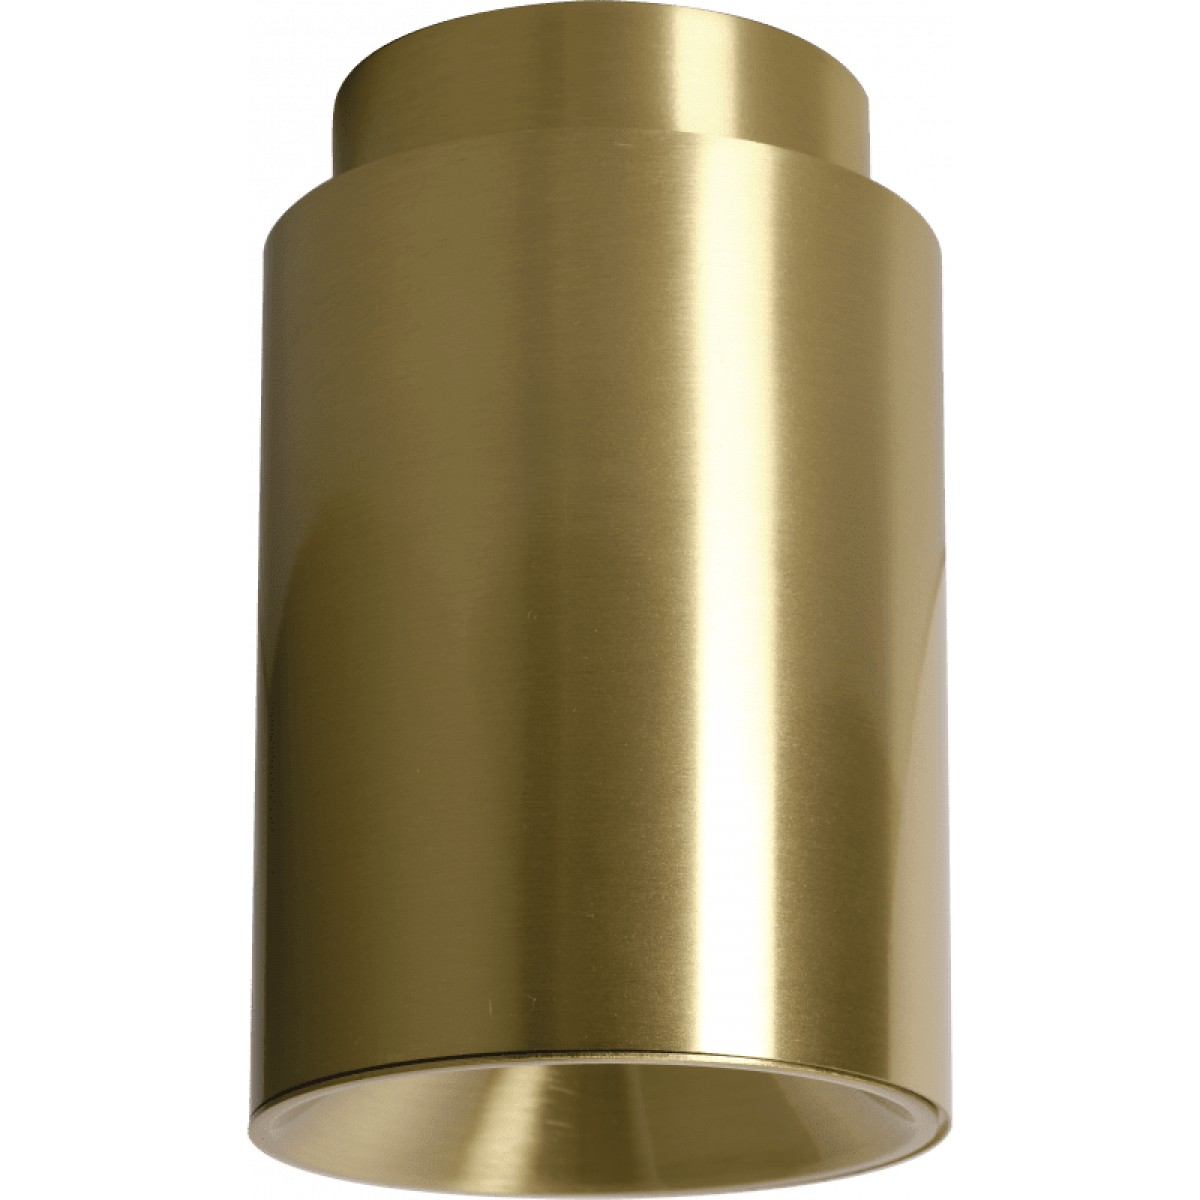 Tobo C85 Ceiling Lamp | Highlight image